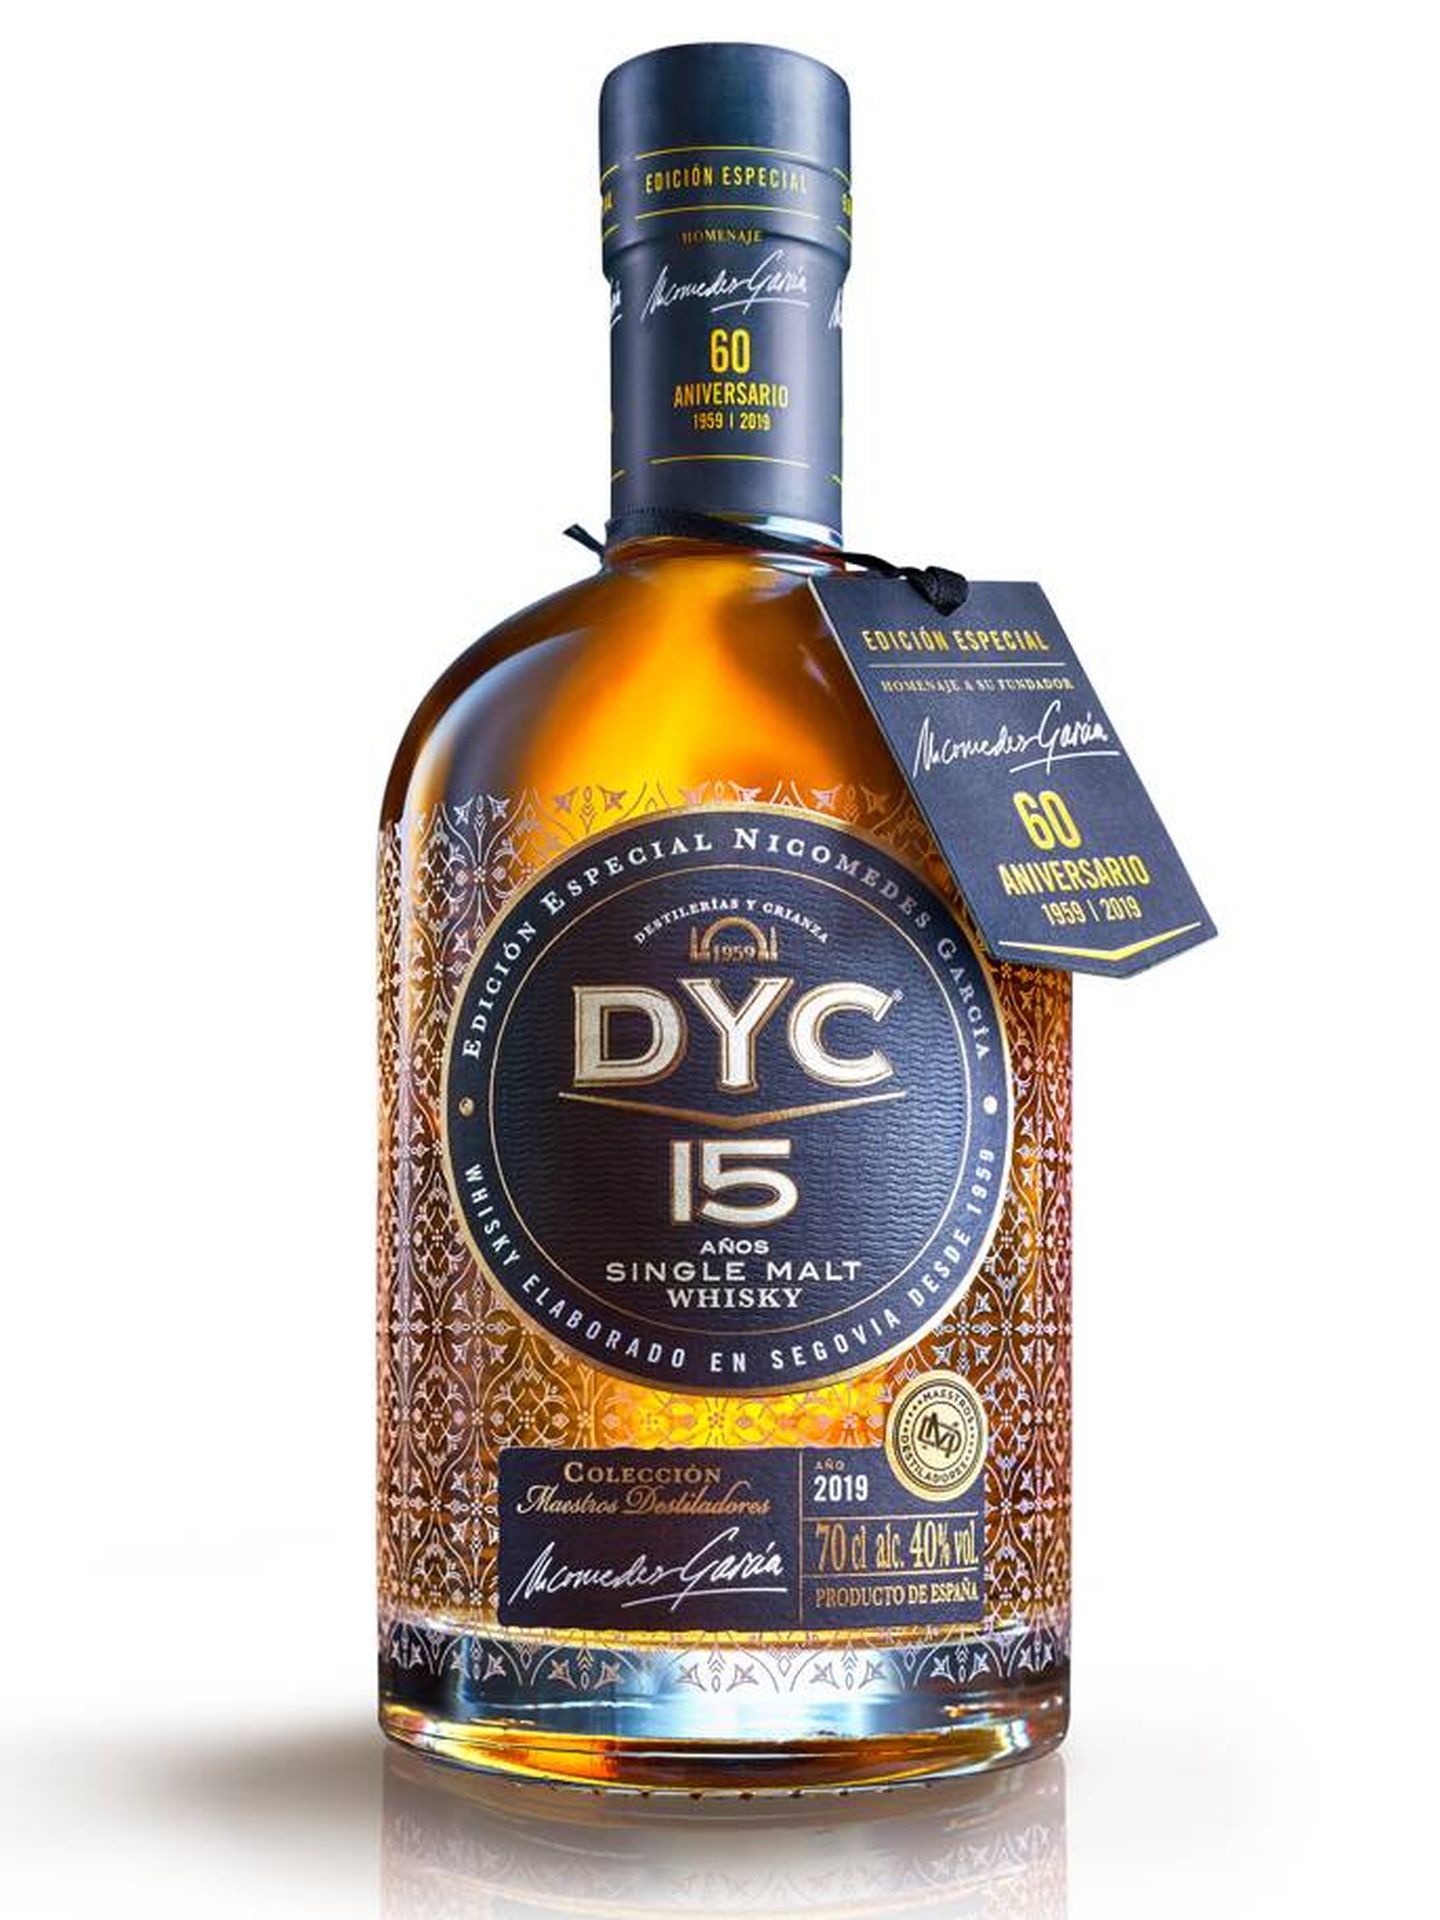 DYC 15 Años - Edición Especial Nicomedes García. (Cortesía)